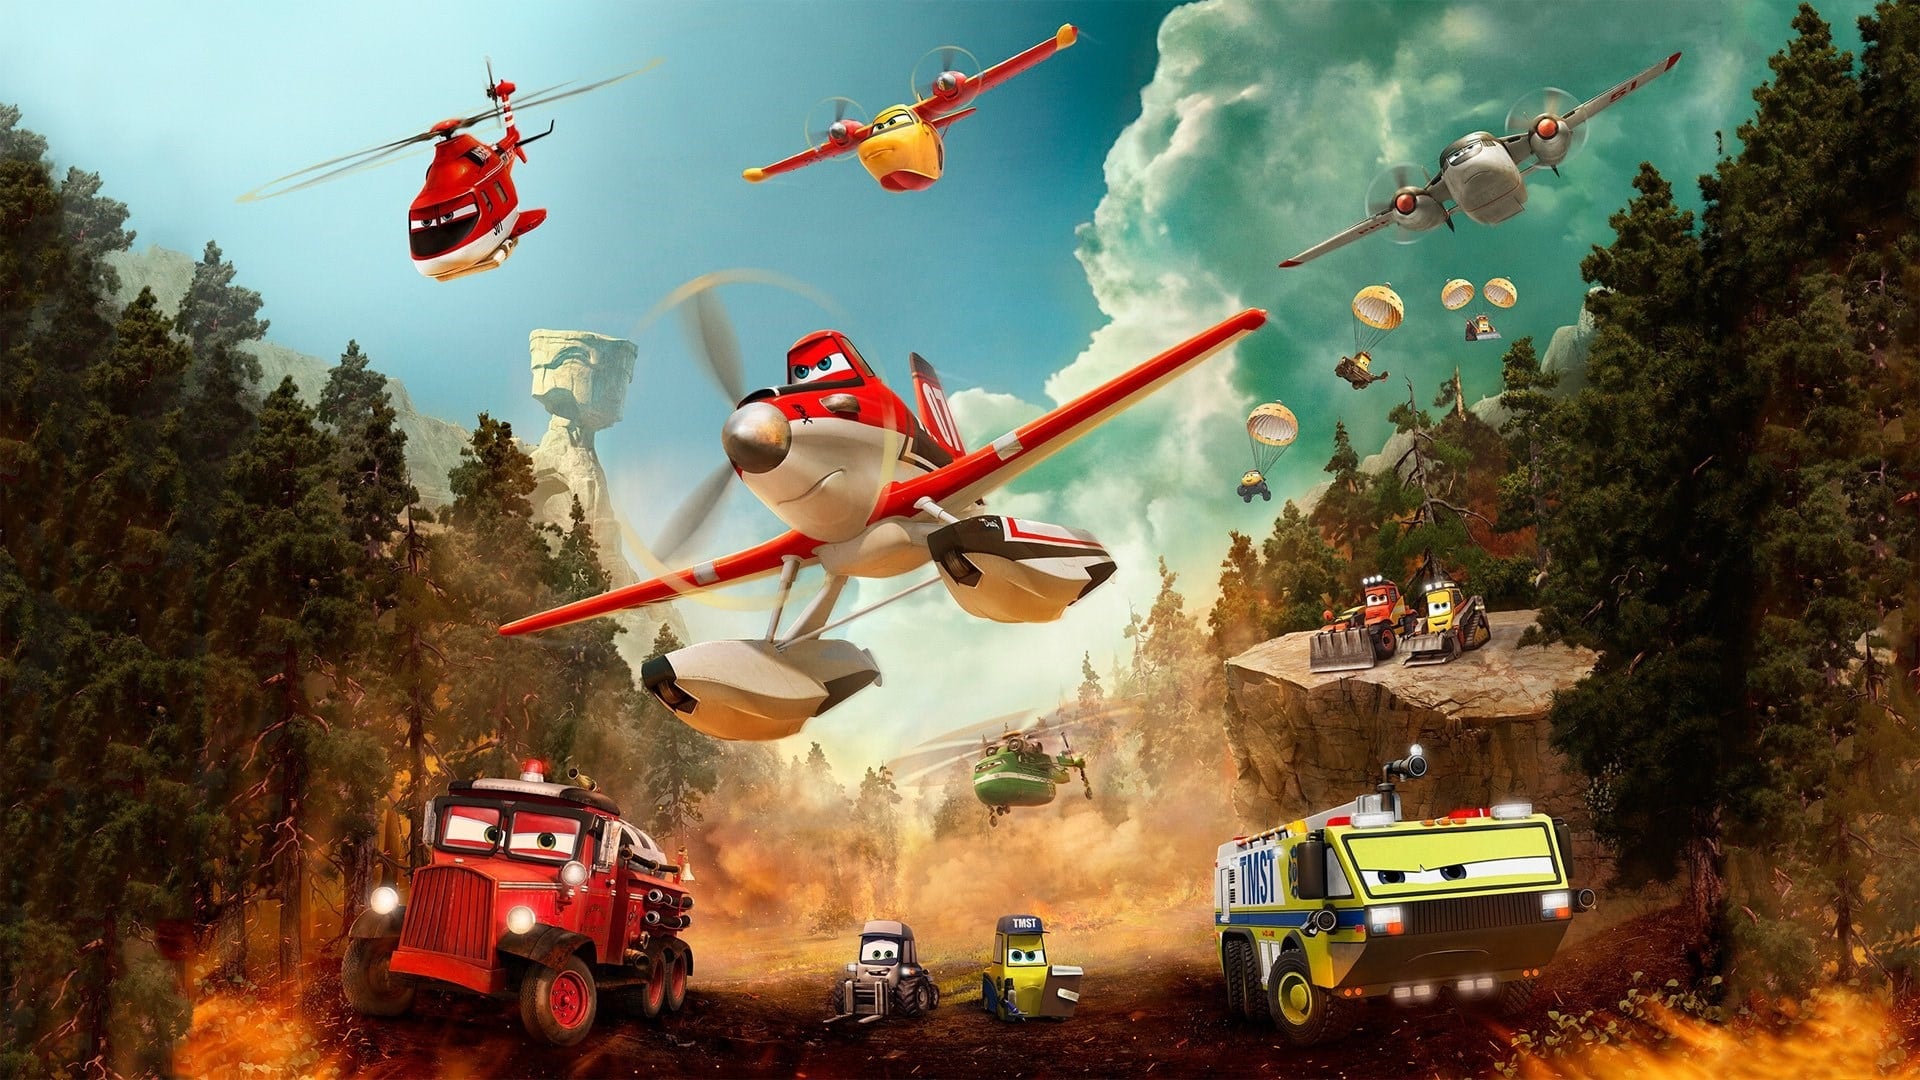 Thế giới may bay: anh hùng & biển lửa - Planes: fire & rescue